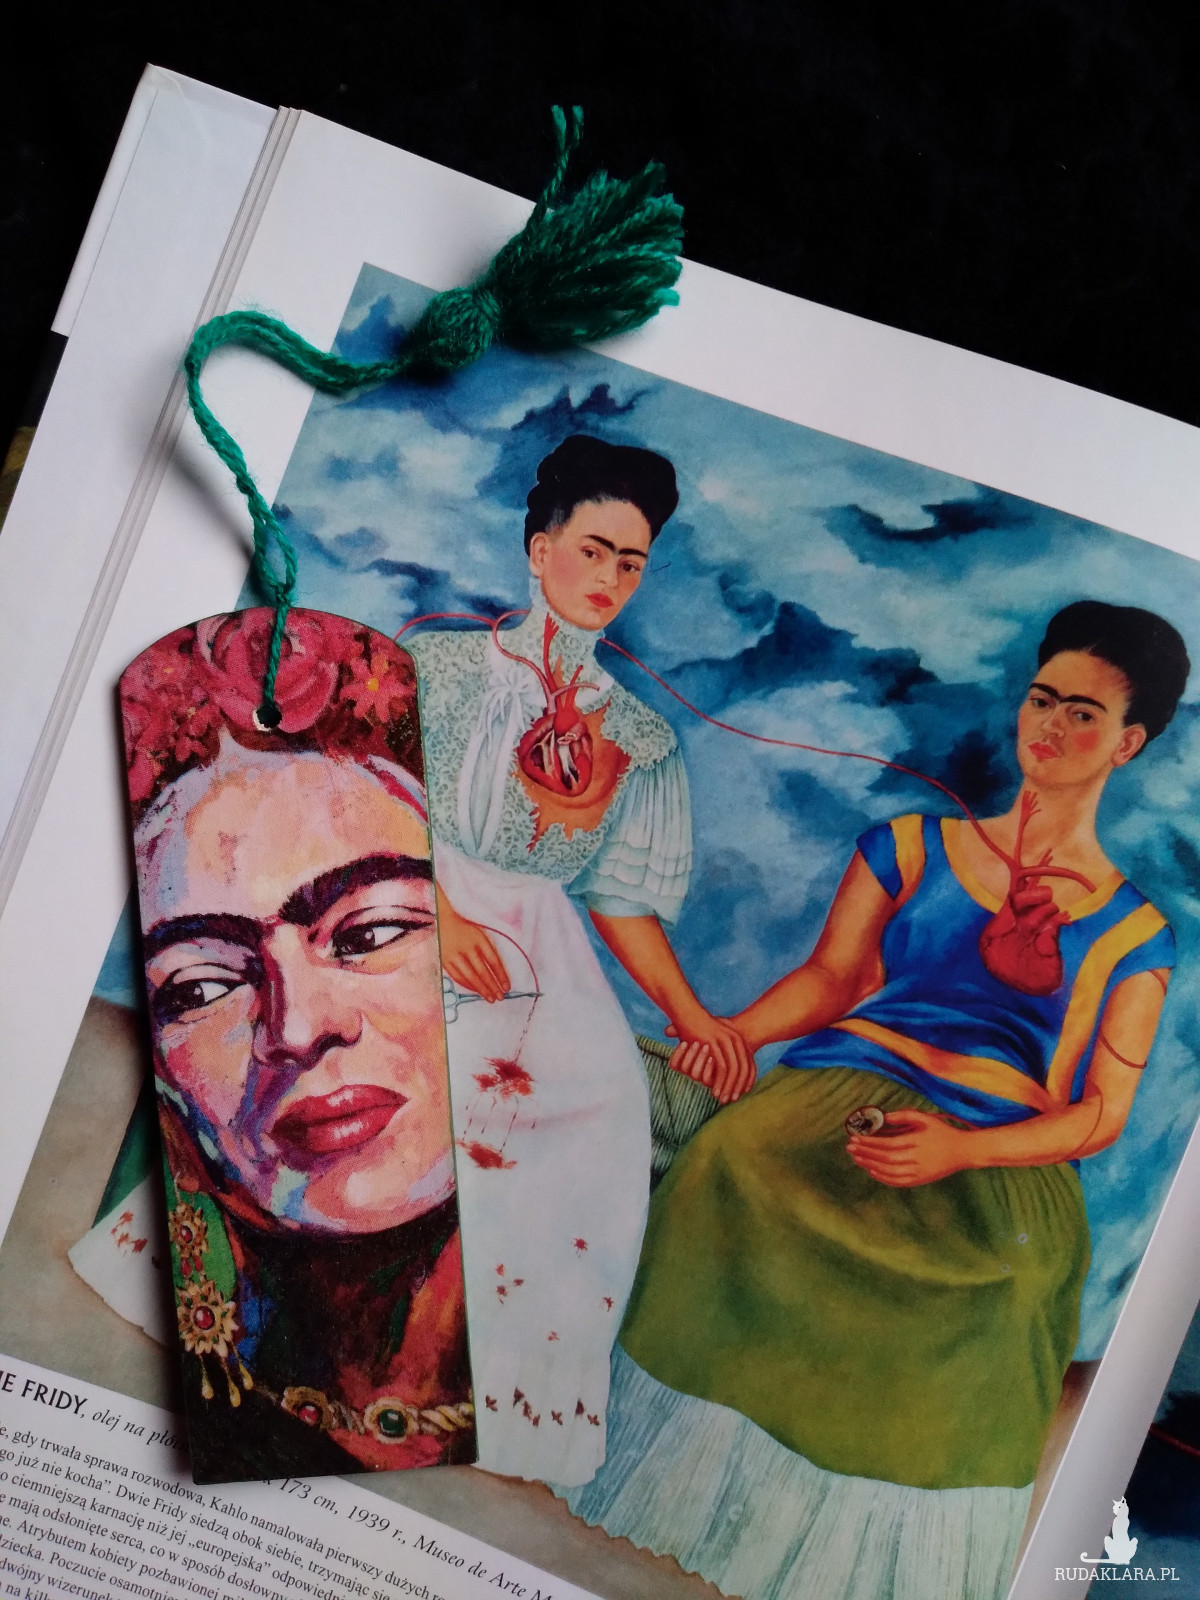 Drewniana zakładka do książki Frida Kahlo motyw kwiatowy kwiaty decoupage